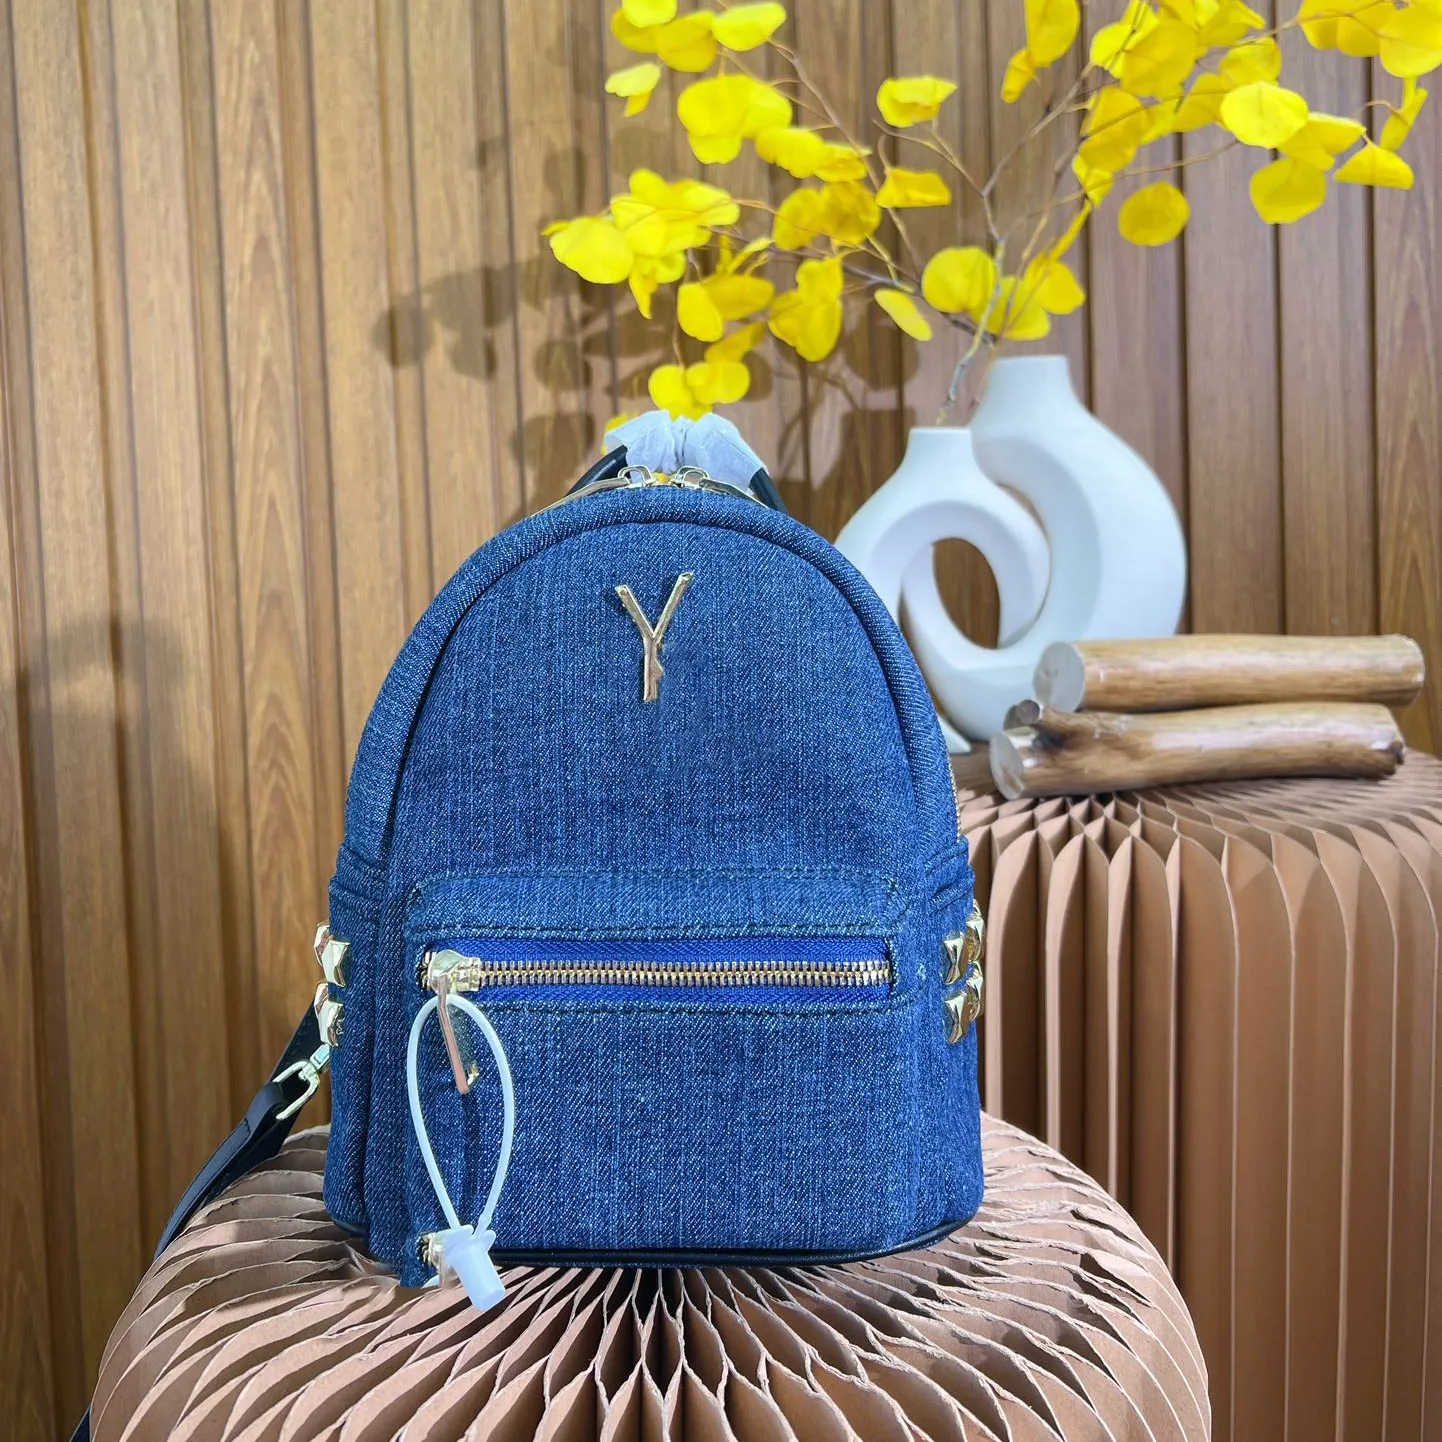 Mode Denim Blau Umhängetasche Männer und Frauen Marke Mode Tasche große Kapazität Reise Reisetasche